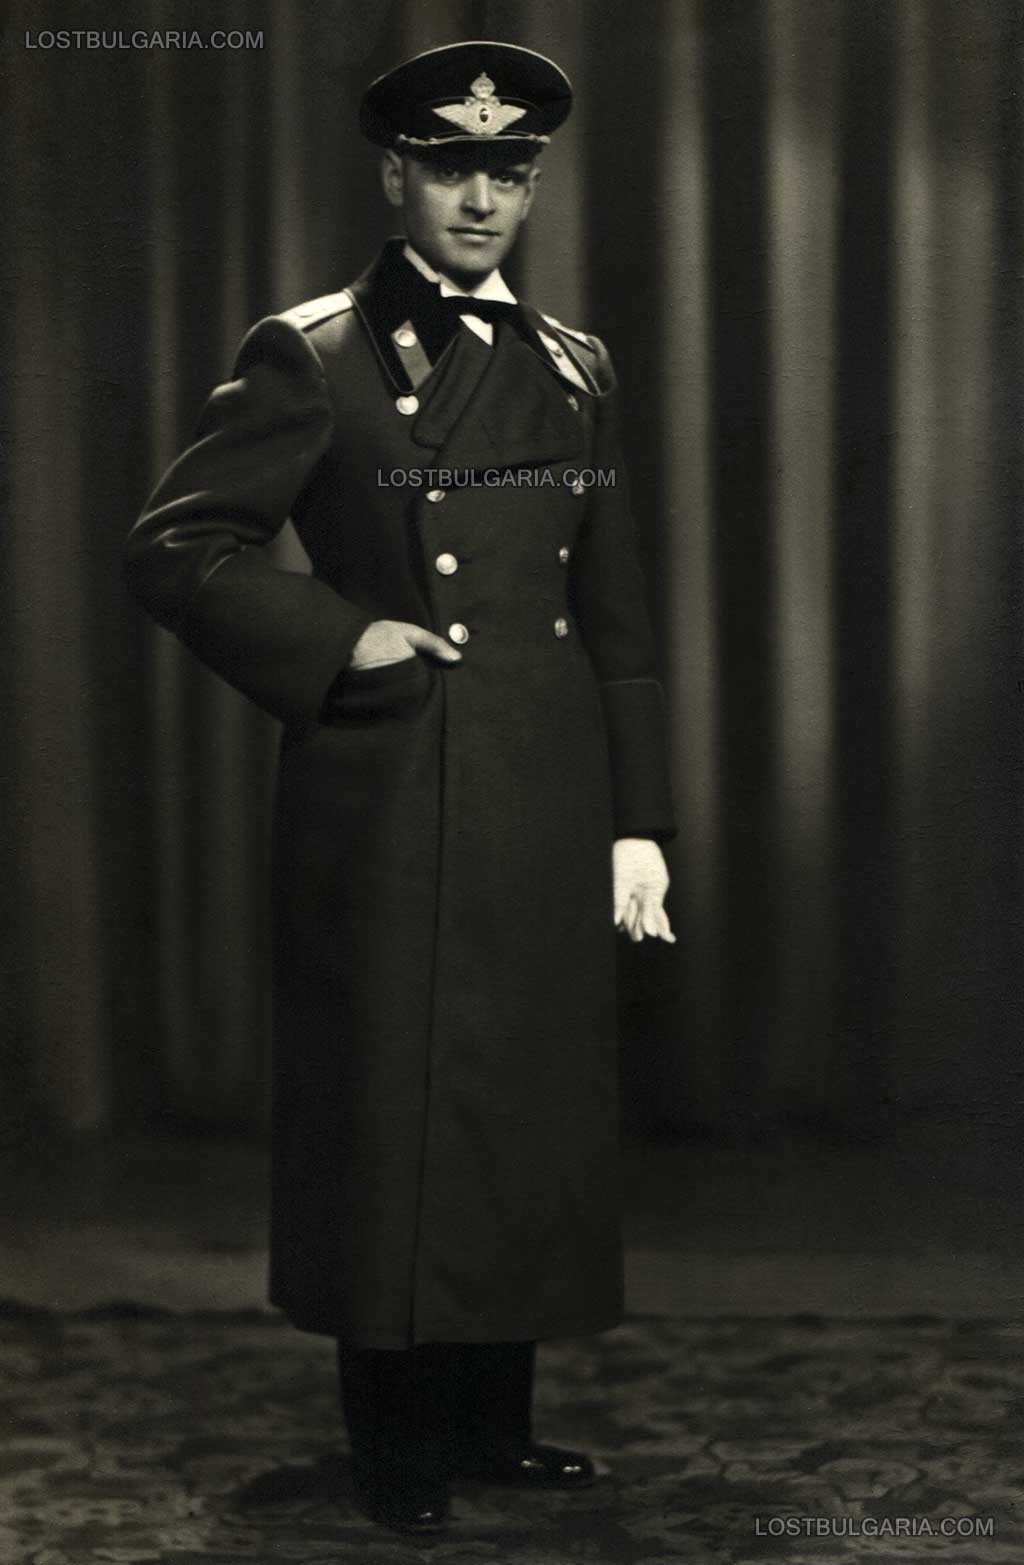 Летецът изтребител капитан Добри Бочев Доневски, 40-те години на XX век